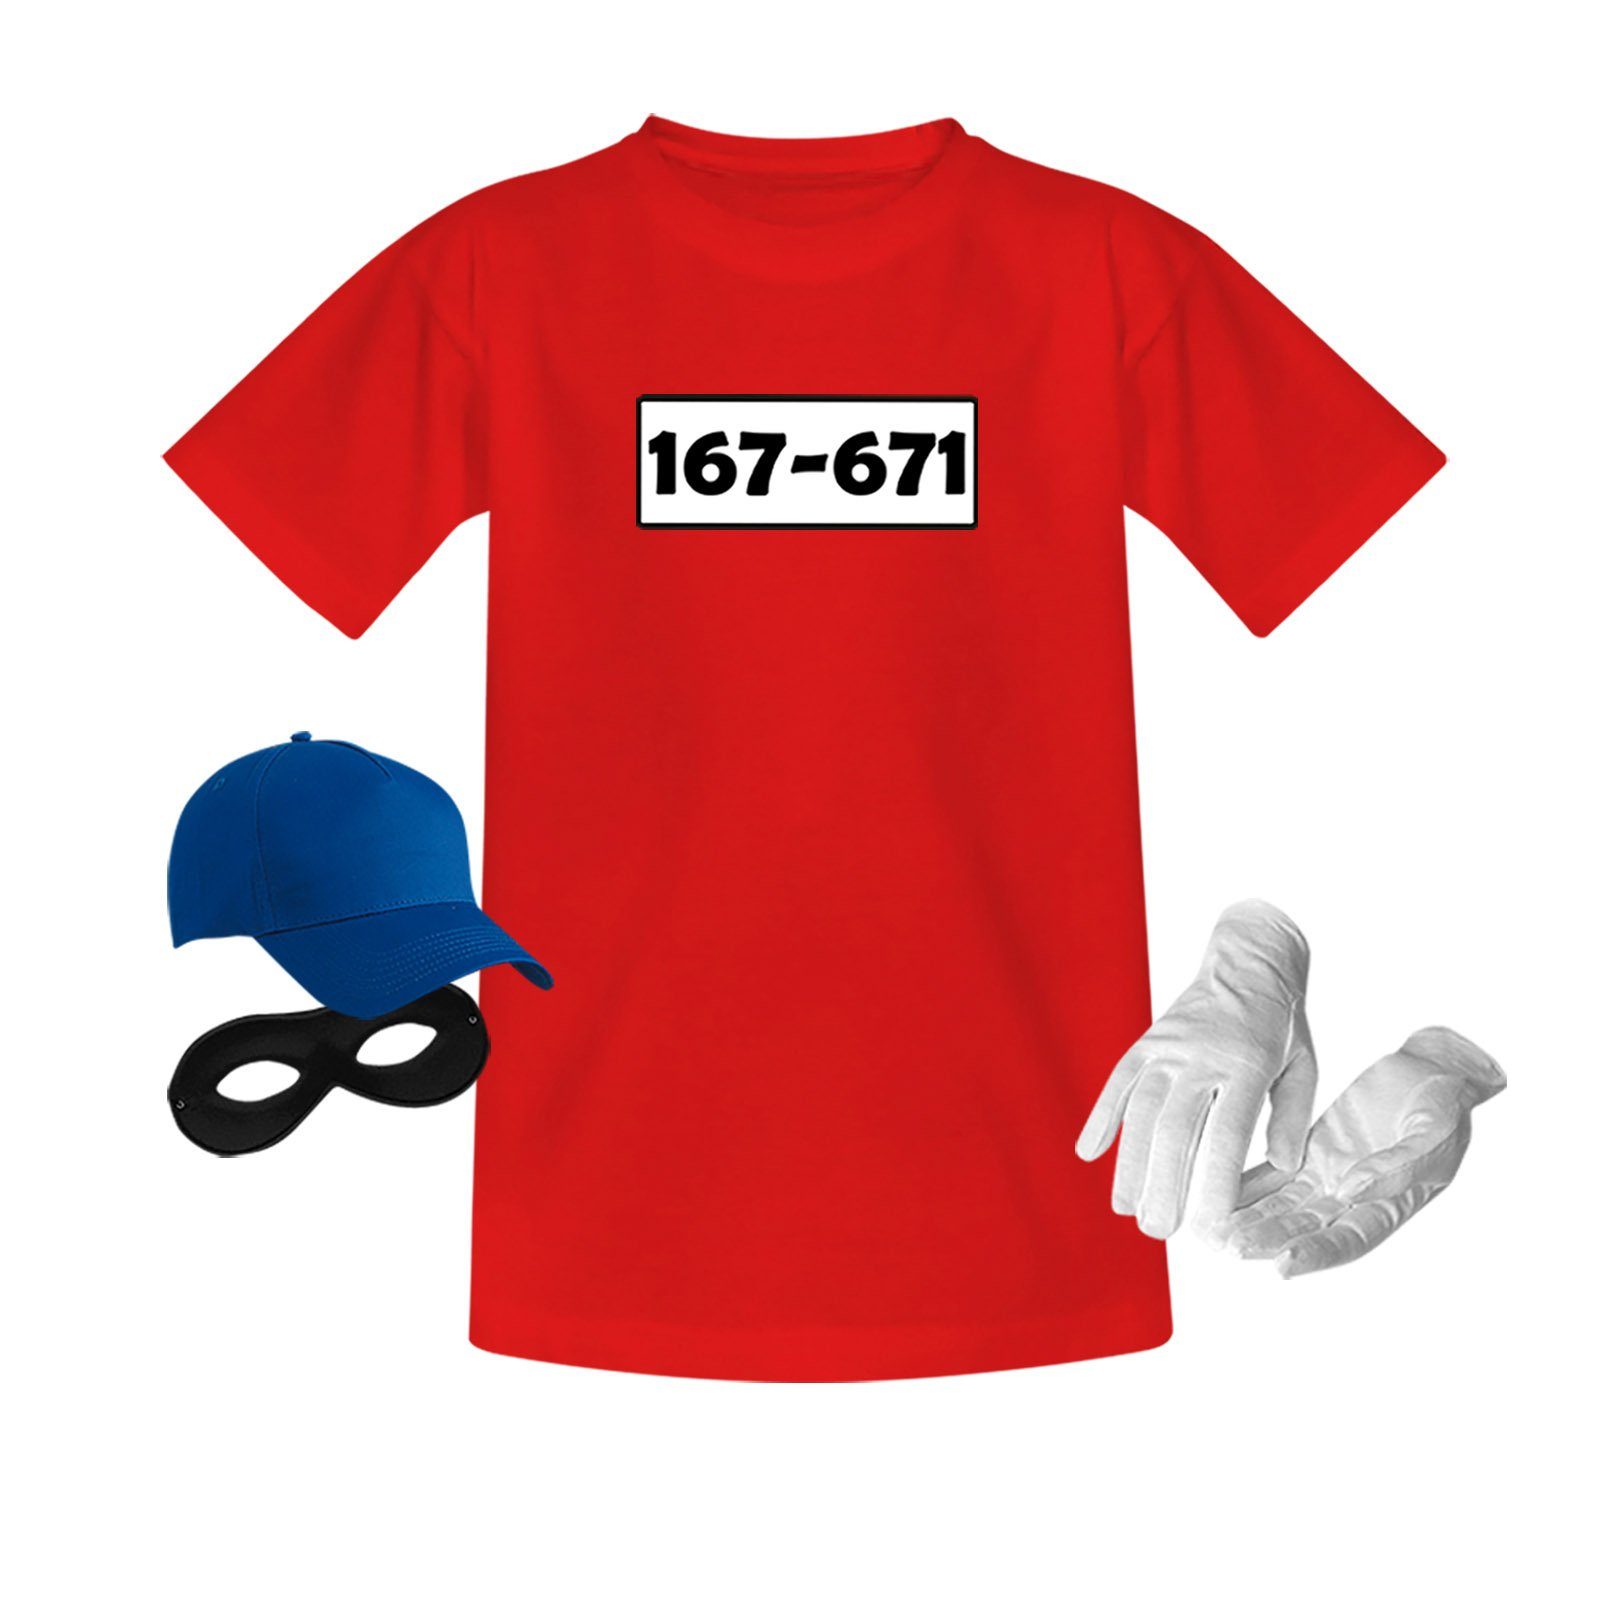 Jimmys Textilfactory Kostüm T-Shirt Panzerknacker Deluxe+ Karneval Kostüm Fasching Kinder 98-164, Shirt+Cap+Maske+Handschuhe